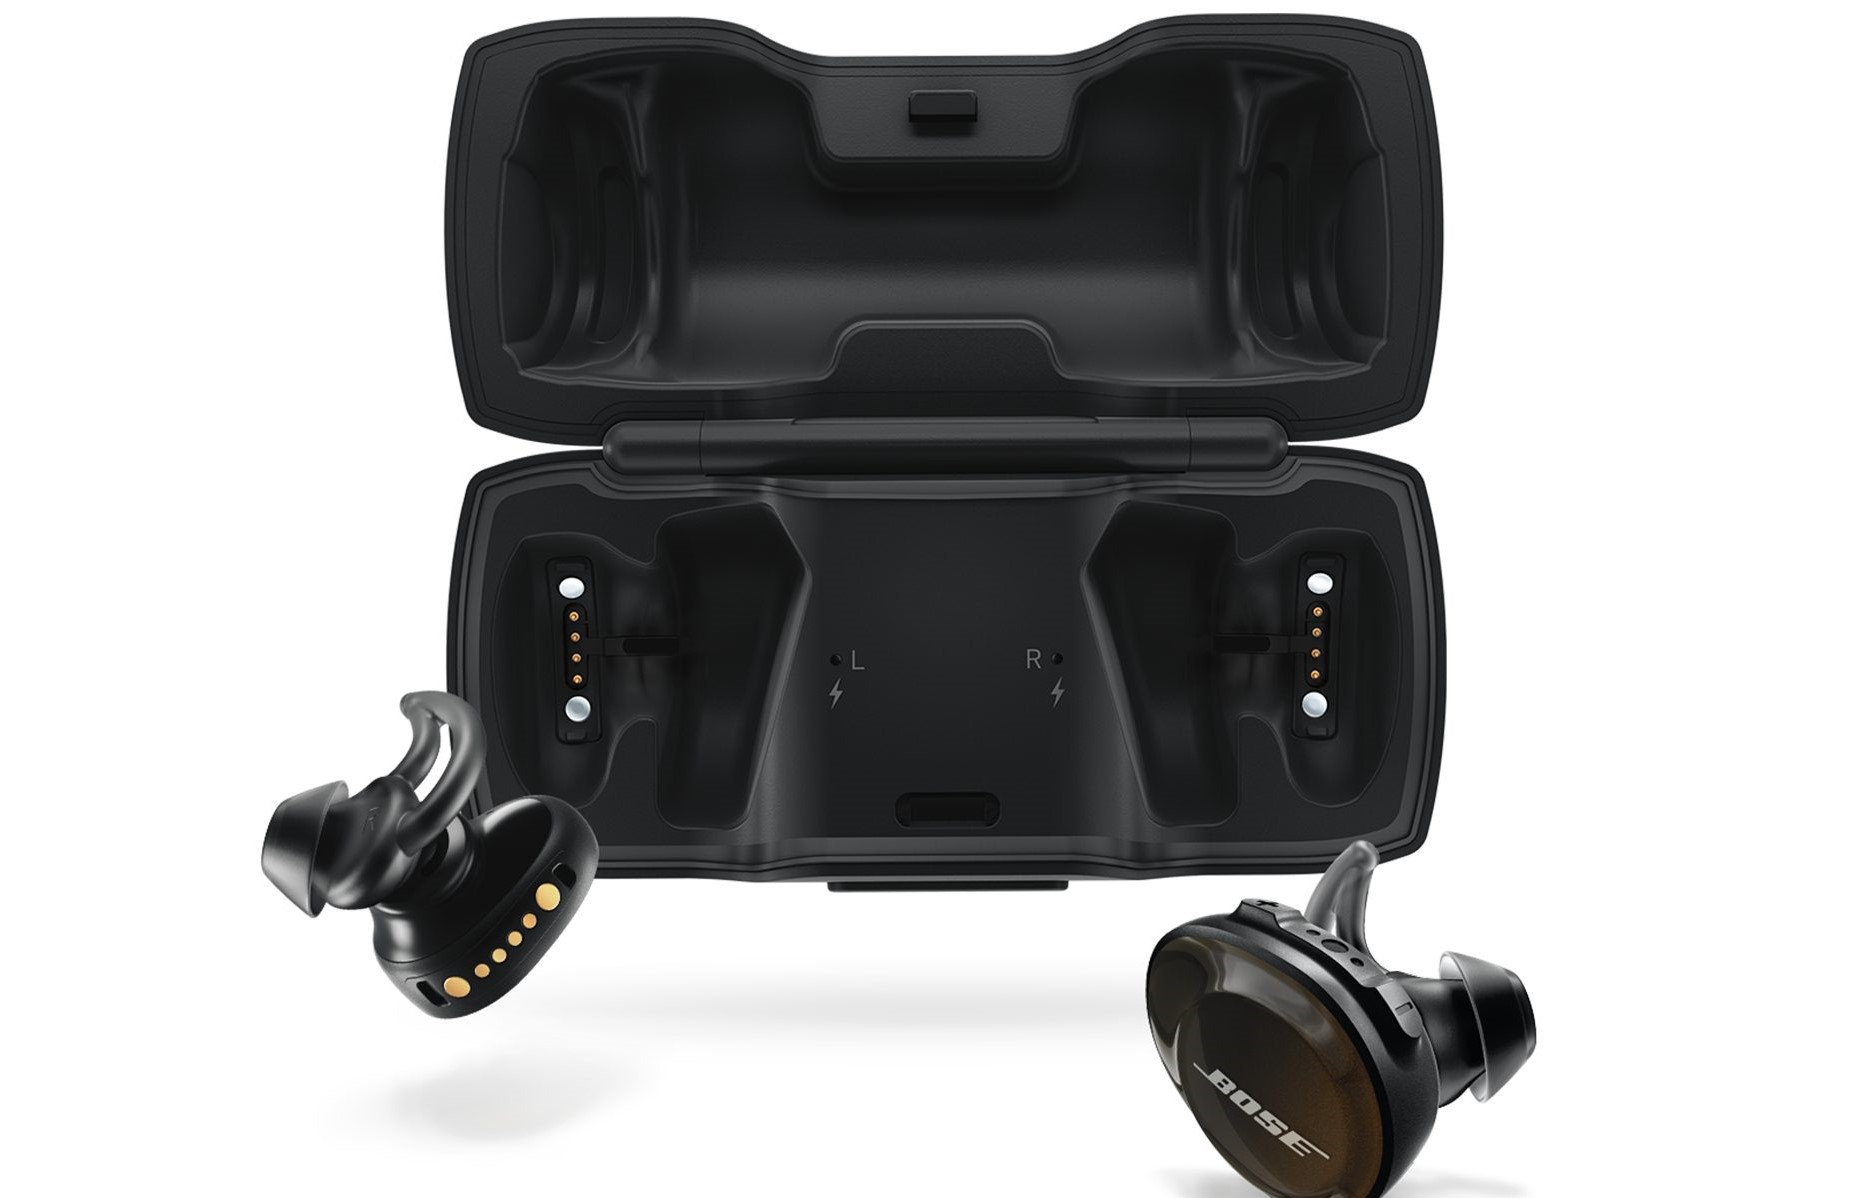 Tai nghe Bluetooth Bose Soundsport Free (Đen) tai nghe in-ear đích thực